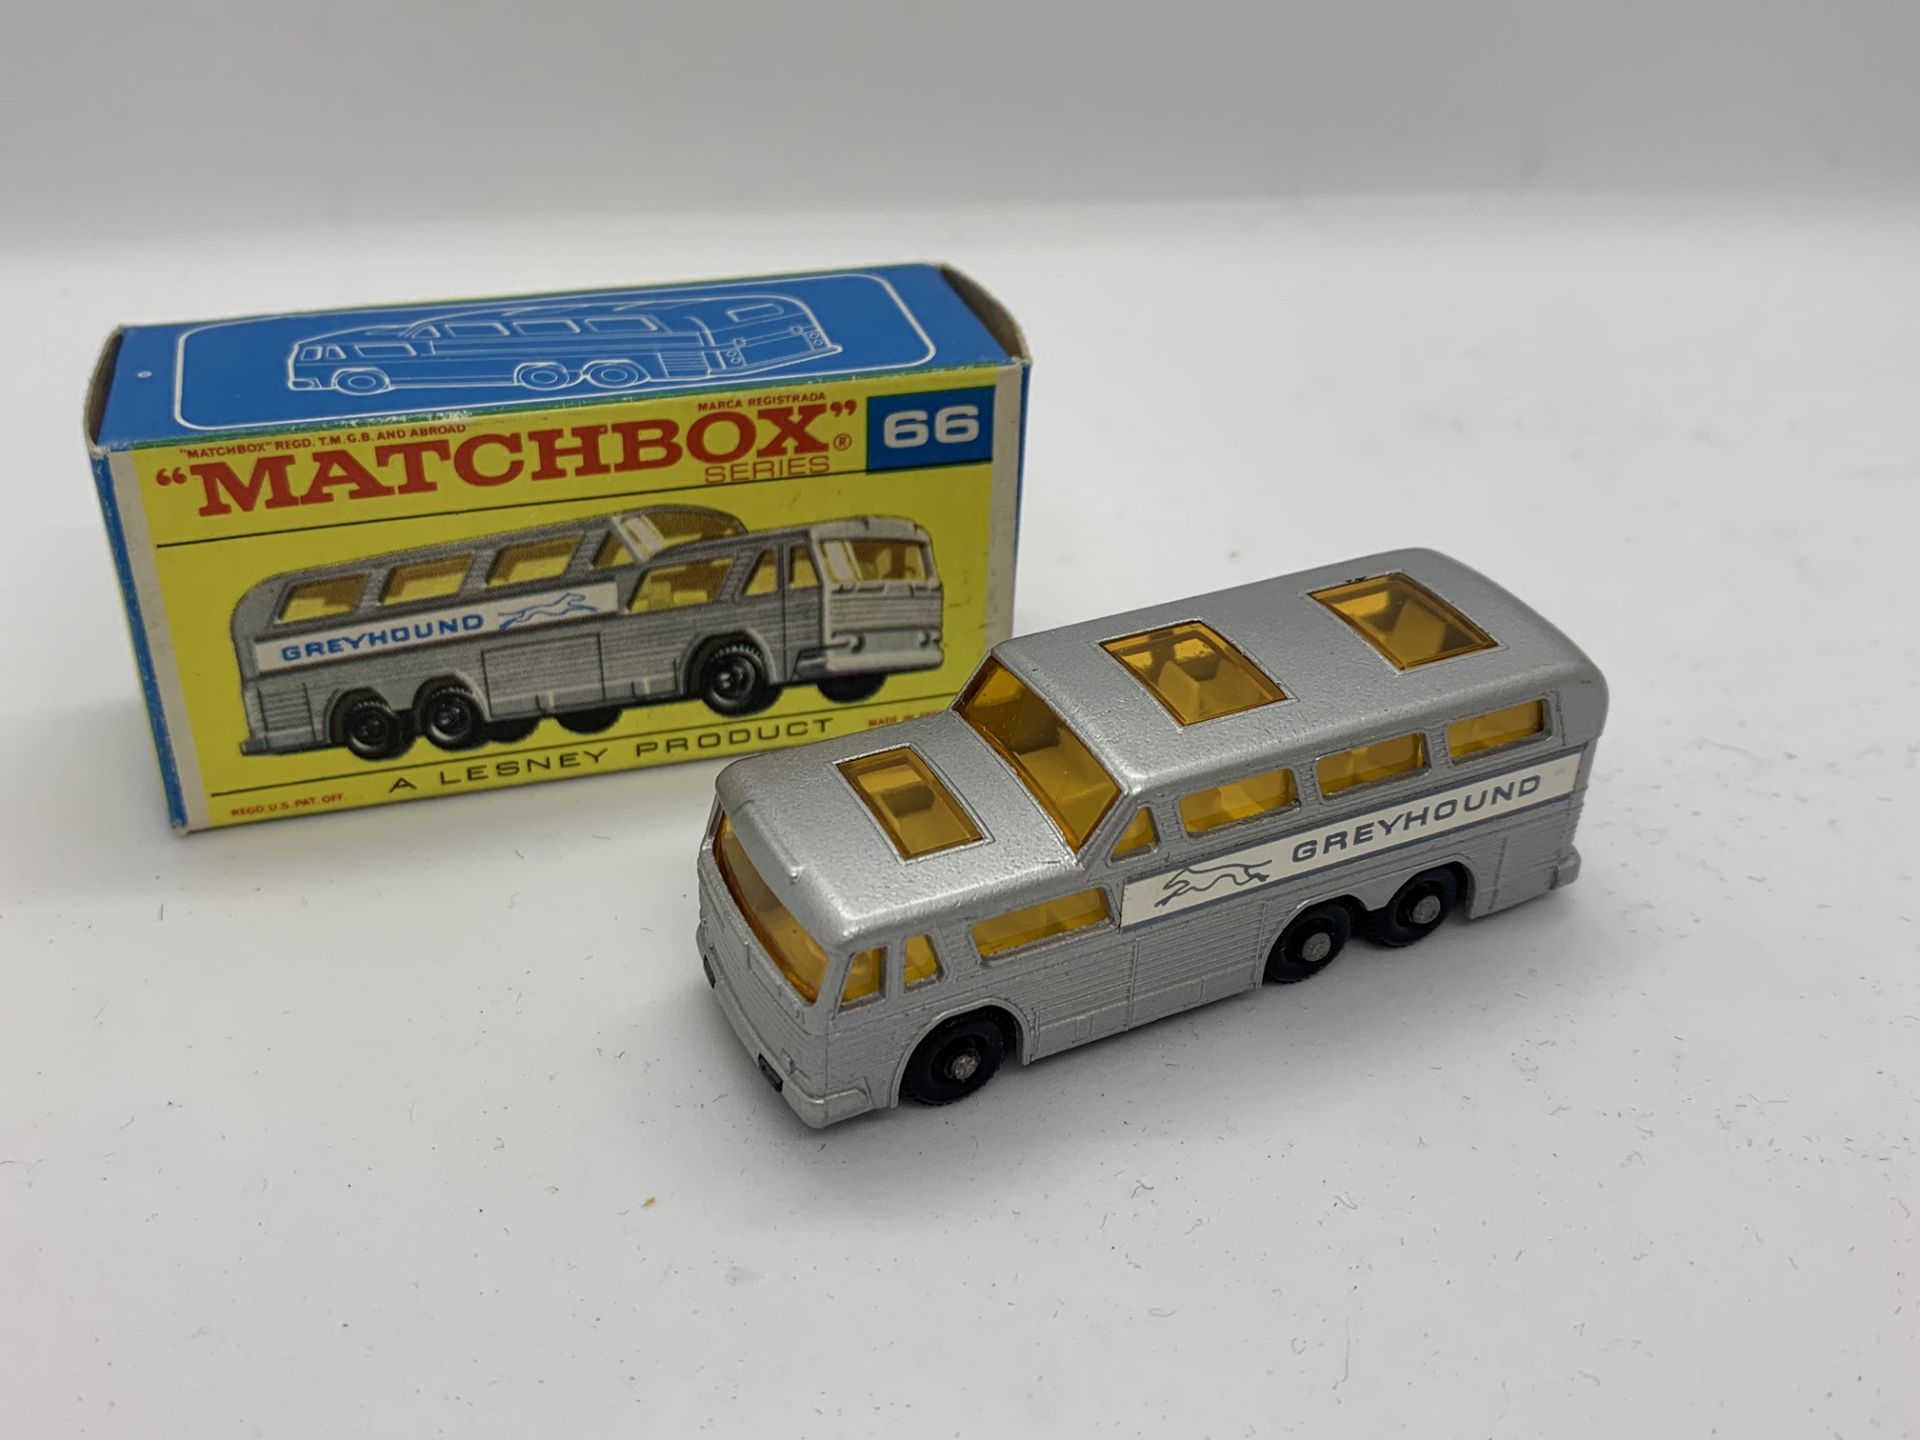 MATCHBOX GREYHOUND COACH NO 66 WITH ORIGINAL BOX - NO RESERVE